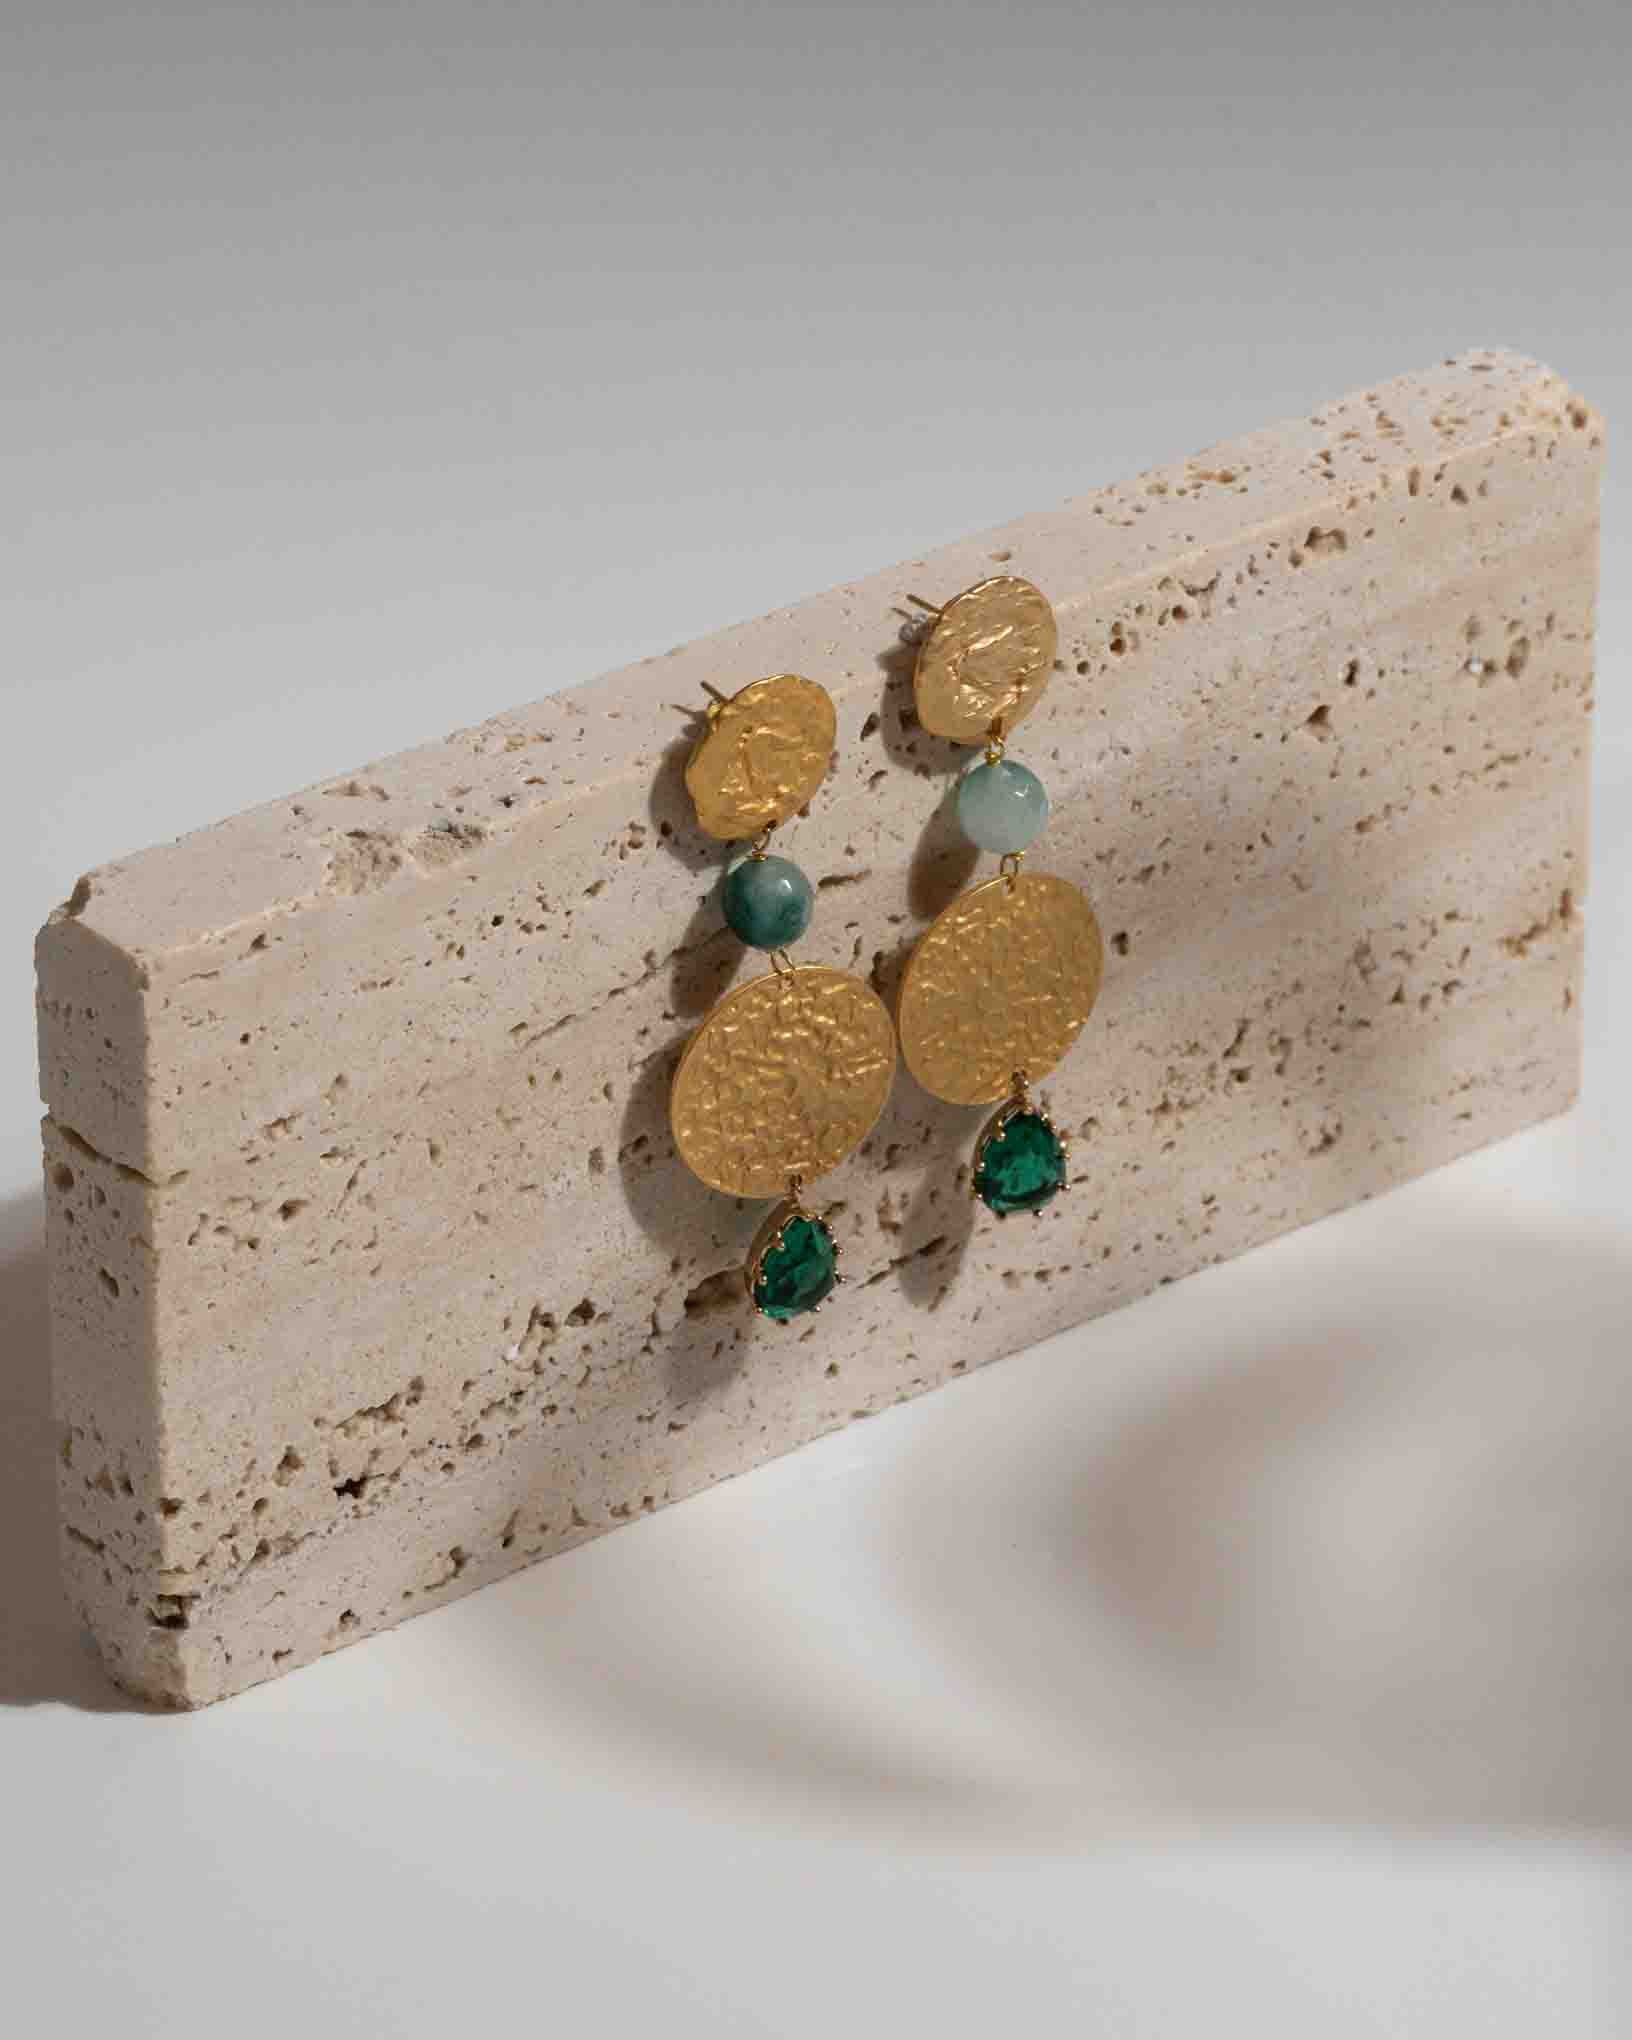 Ohrring Pesto alla Genovese aus der Kollektion I Classici von Donna Rachele Jewelry